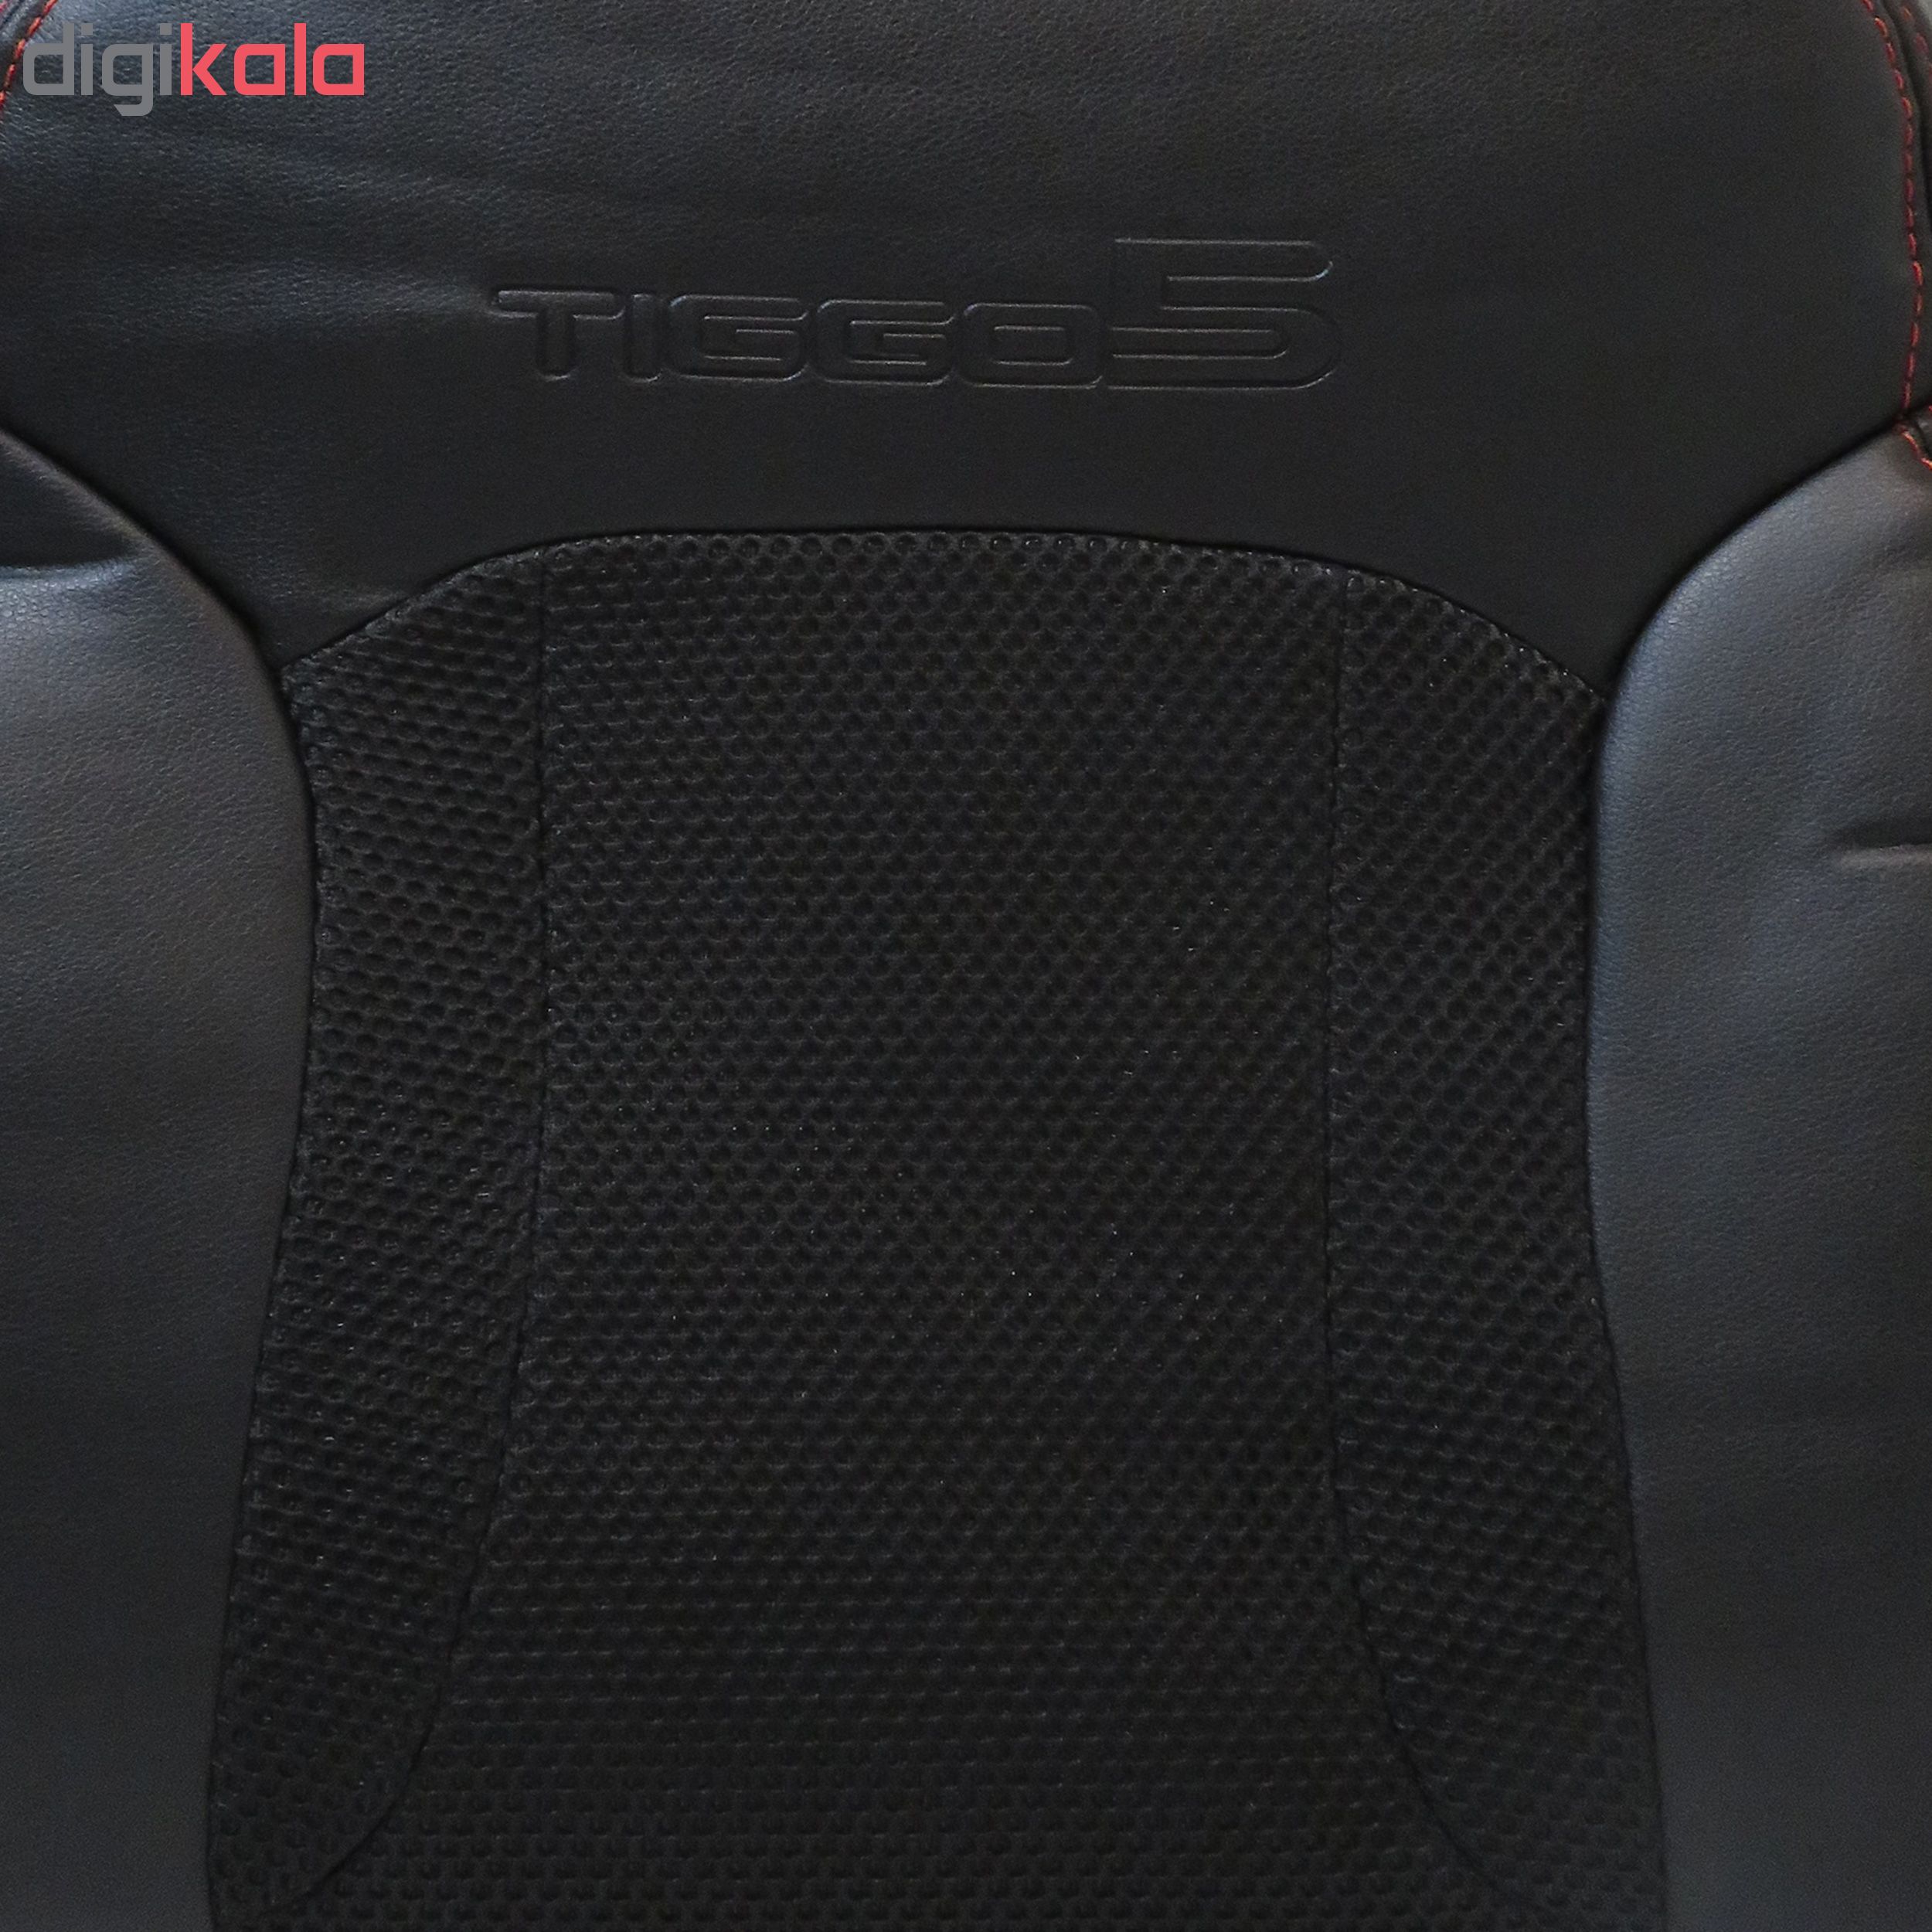 روکش صندلی خودرو مدل tg02 مناسب برای تیگو 5